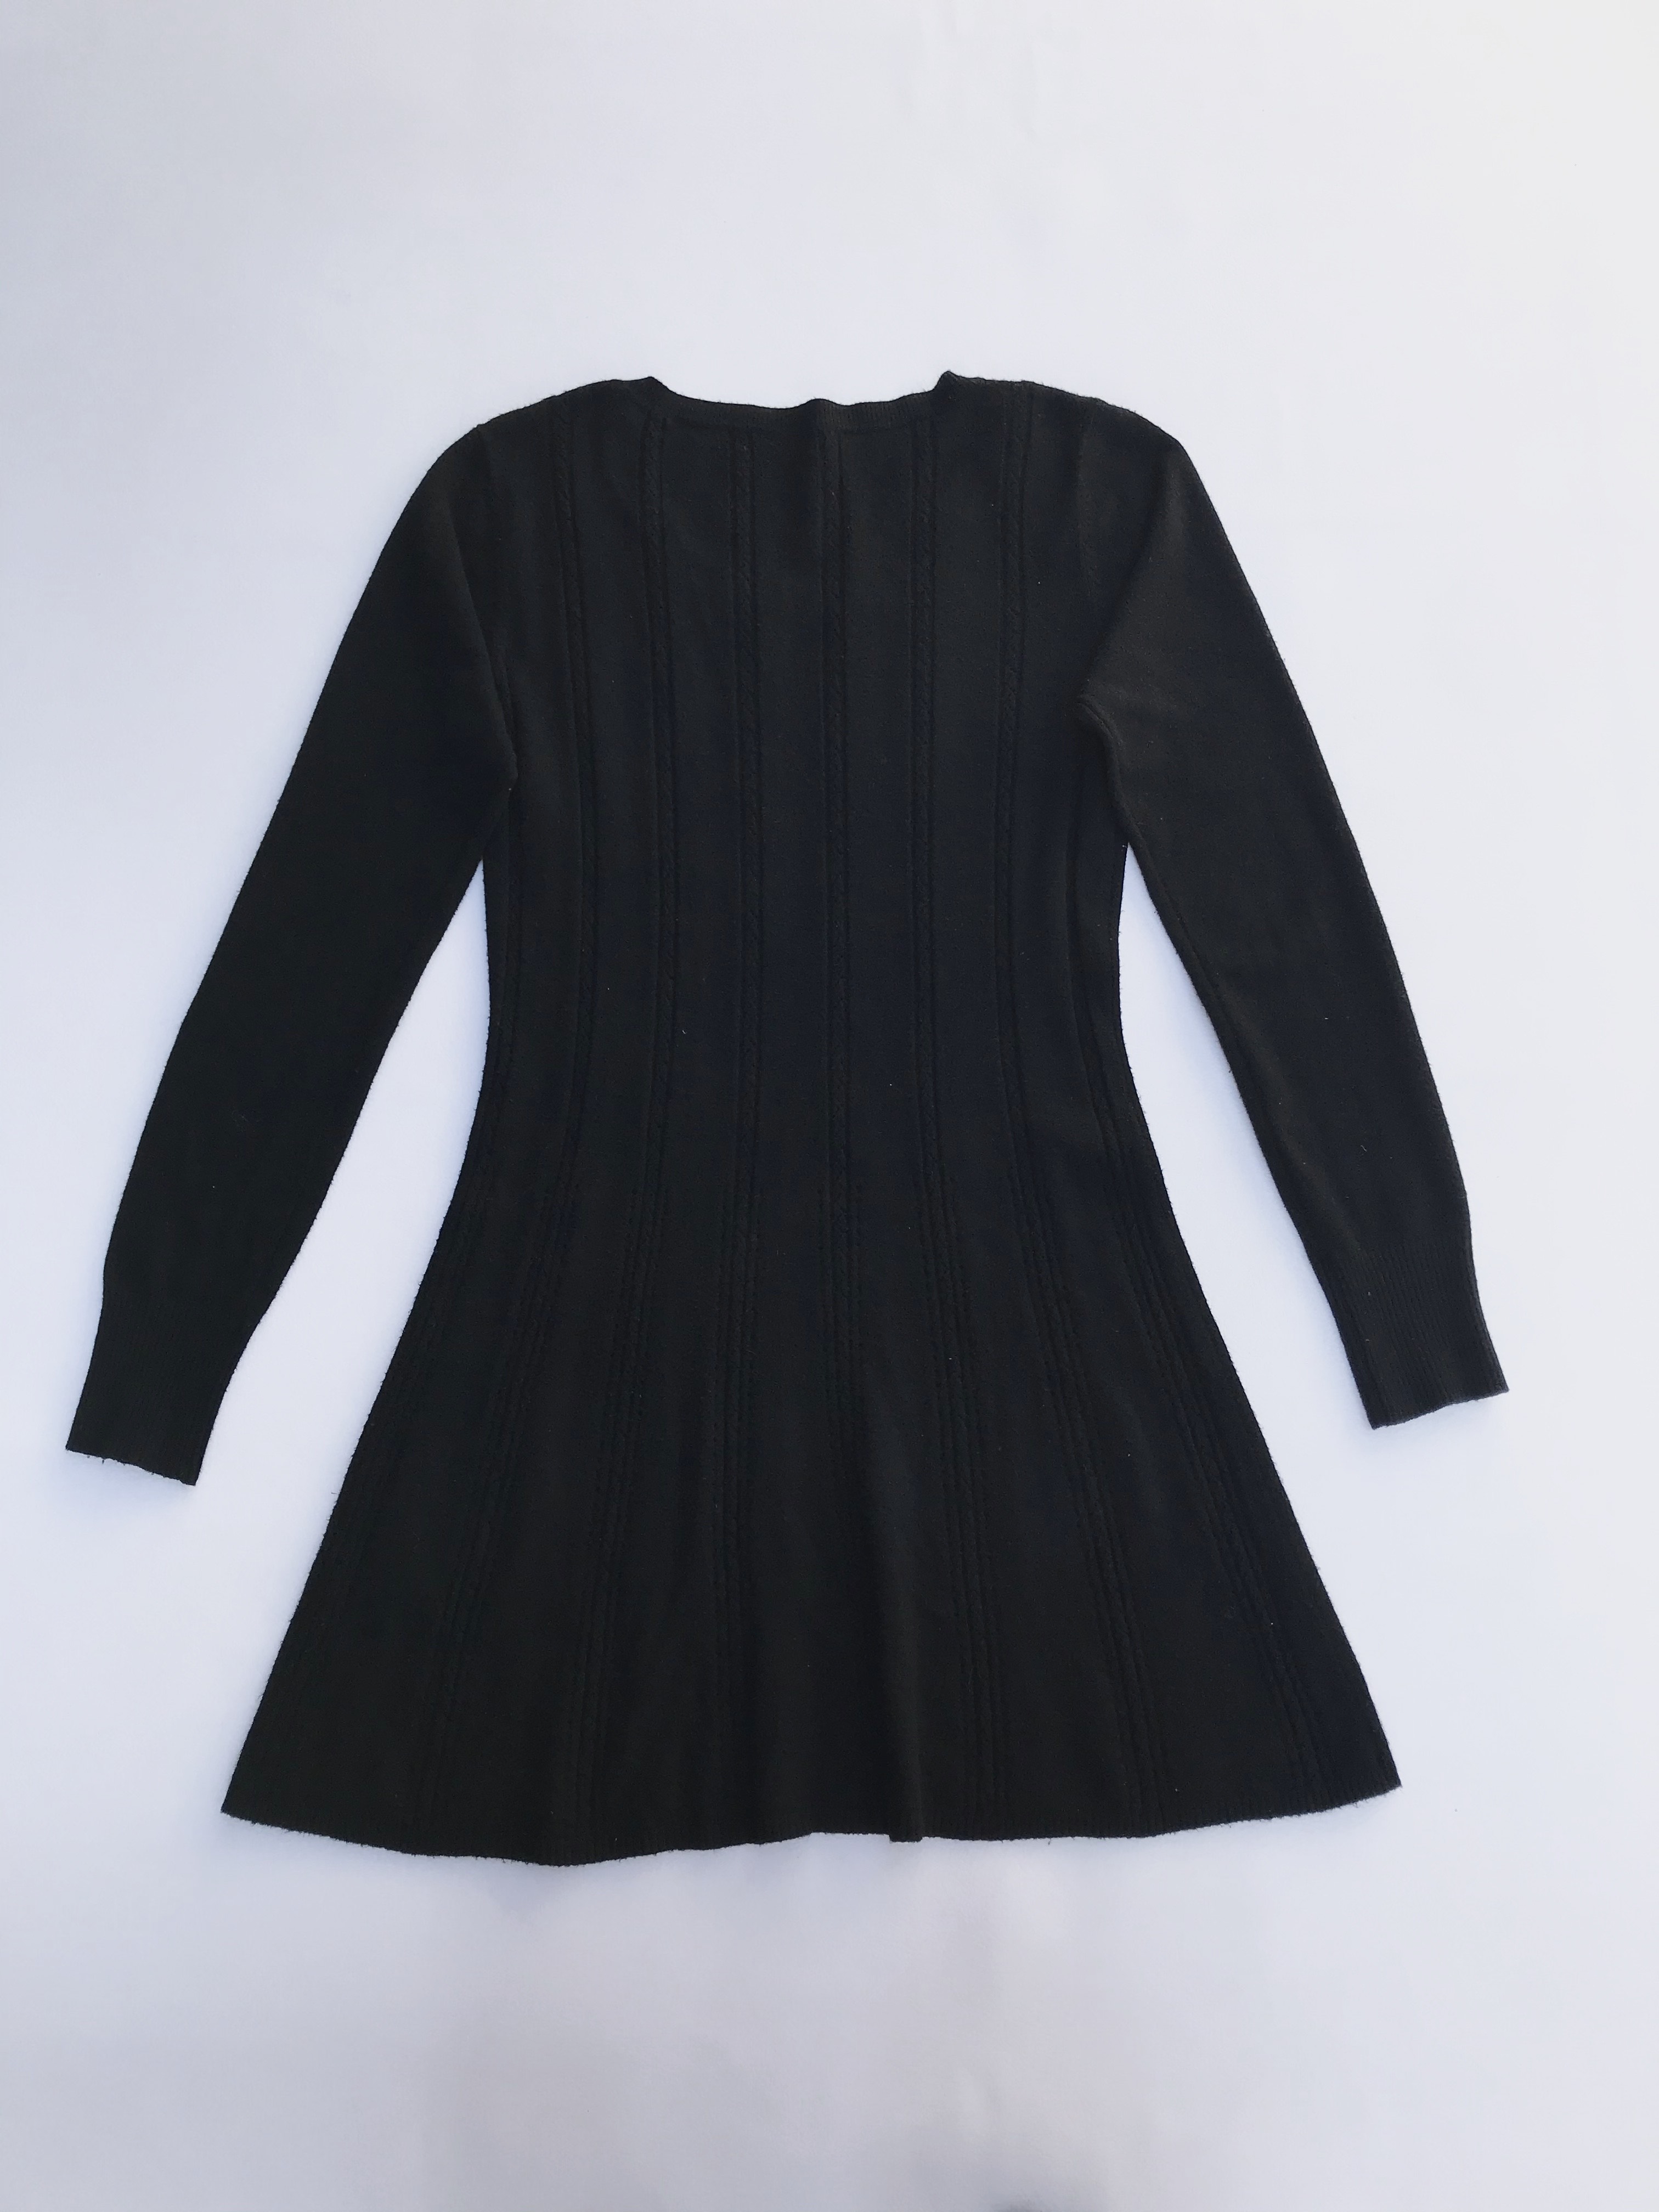 Chompa larga tipo vestido negra con franjas de textura trenzada y puntitos calados
Talla S